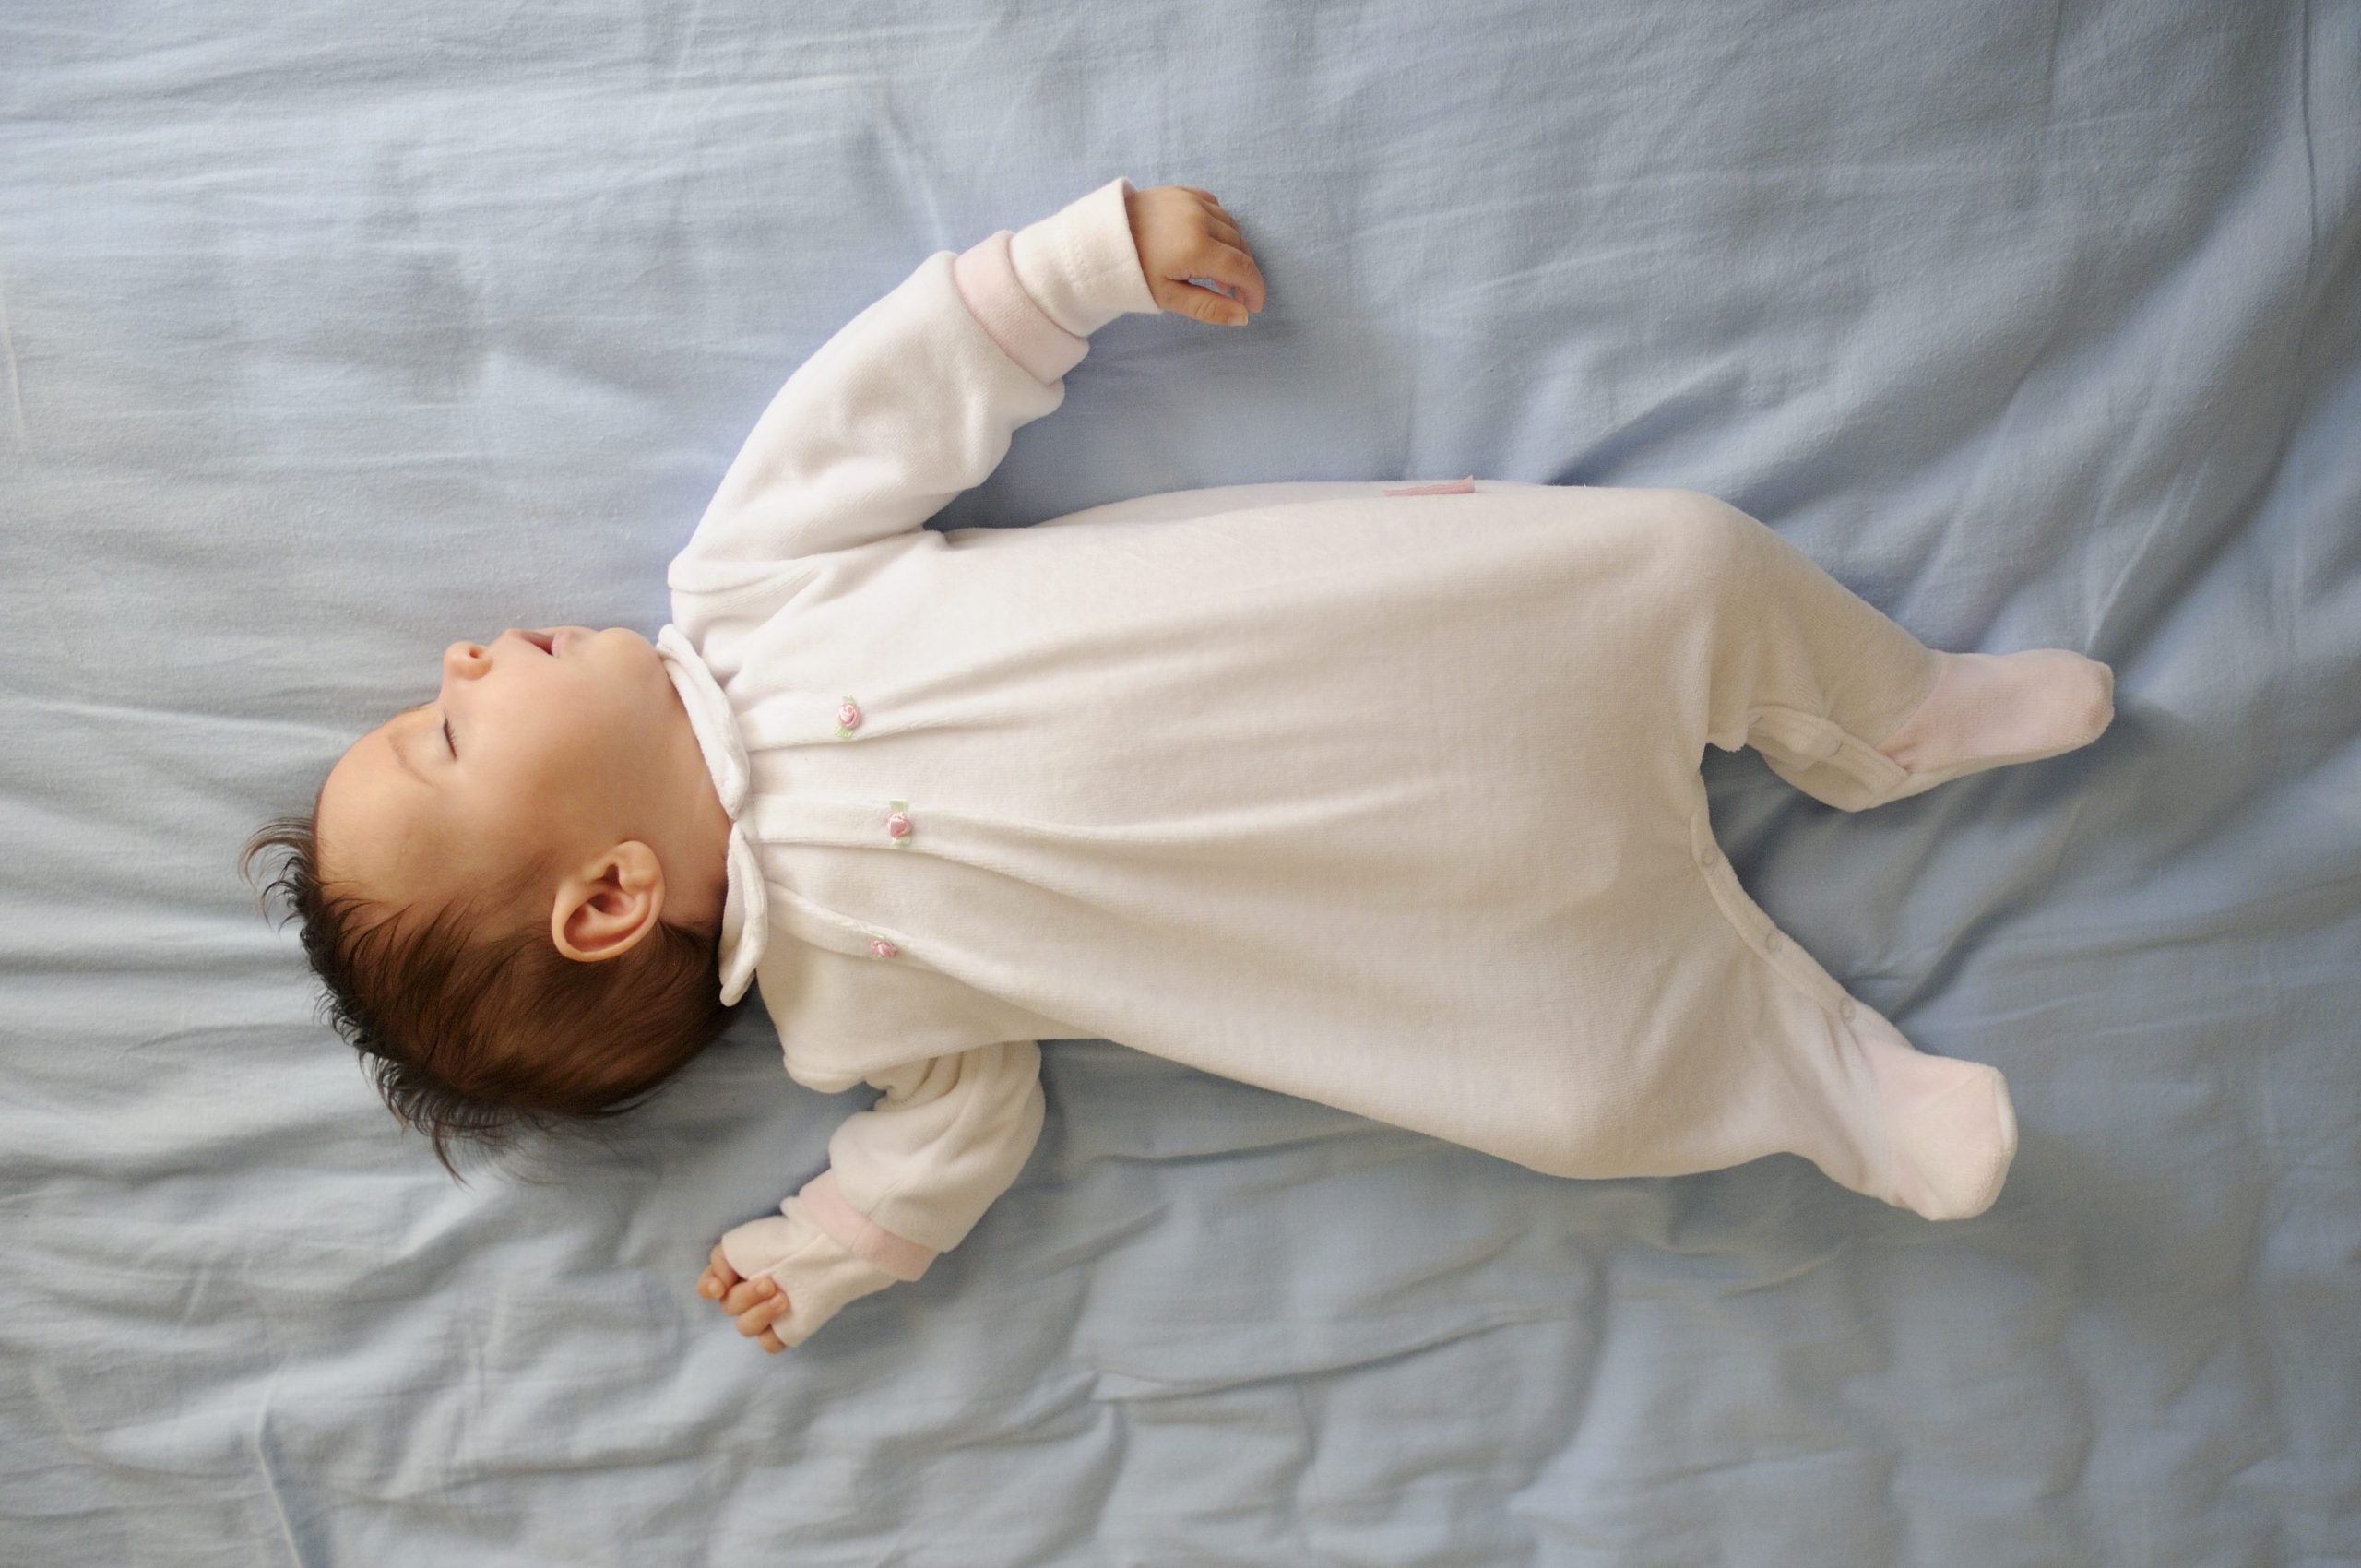 Lit nourrisson : quel est le meilleur lit pour bébé ?